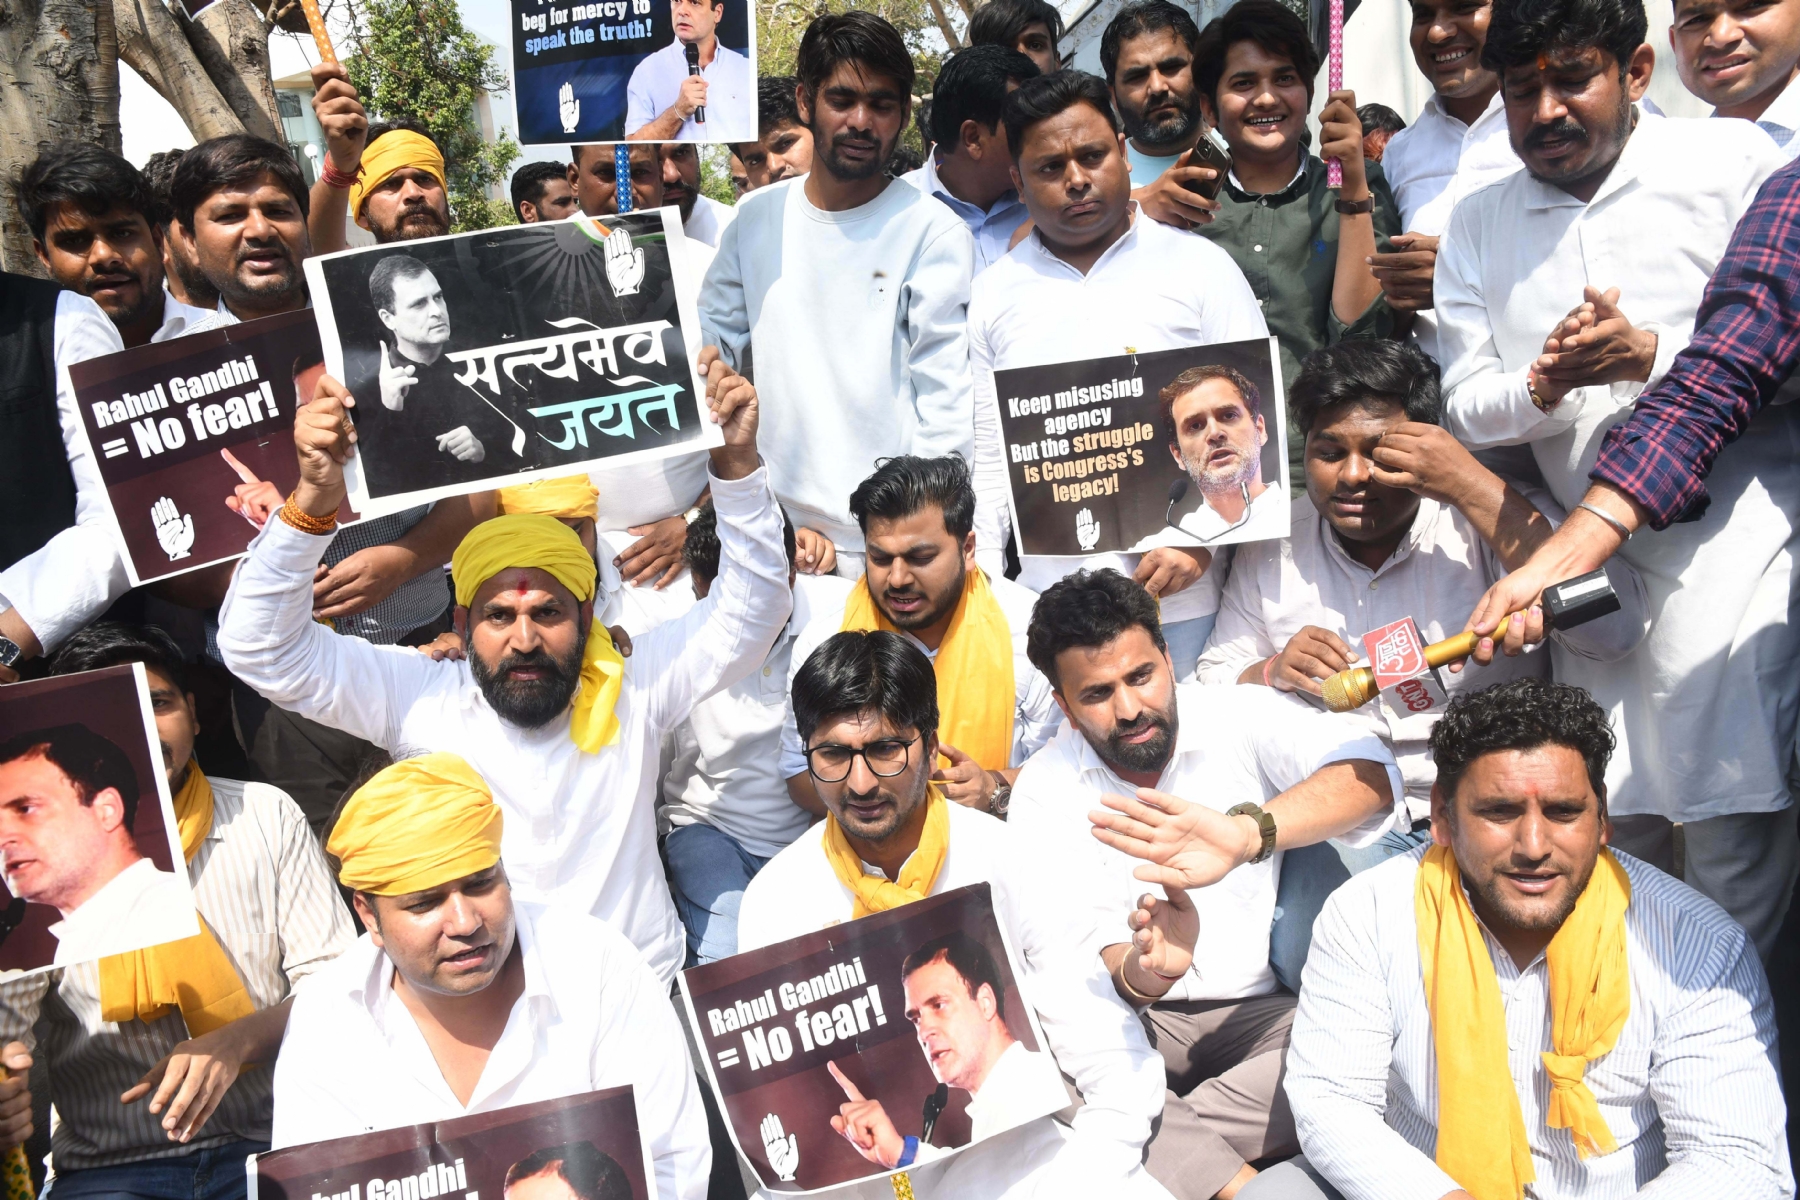 नई दिल्ली में गुरुवार 23 मार्च को राहुल गांधी को दो साल की सजा के मुद्दे पर पीएम मोदी के खिलाफ प्रदर्शन के दौरान नारेबाजी करते भारतीय युवा कांग्रेस के कार्यकर्ता। हिन्दुस्थान समाचार/ फोटो गणेश बिष्ट 